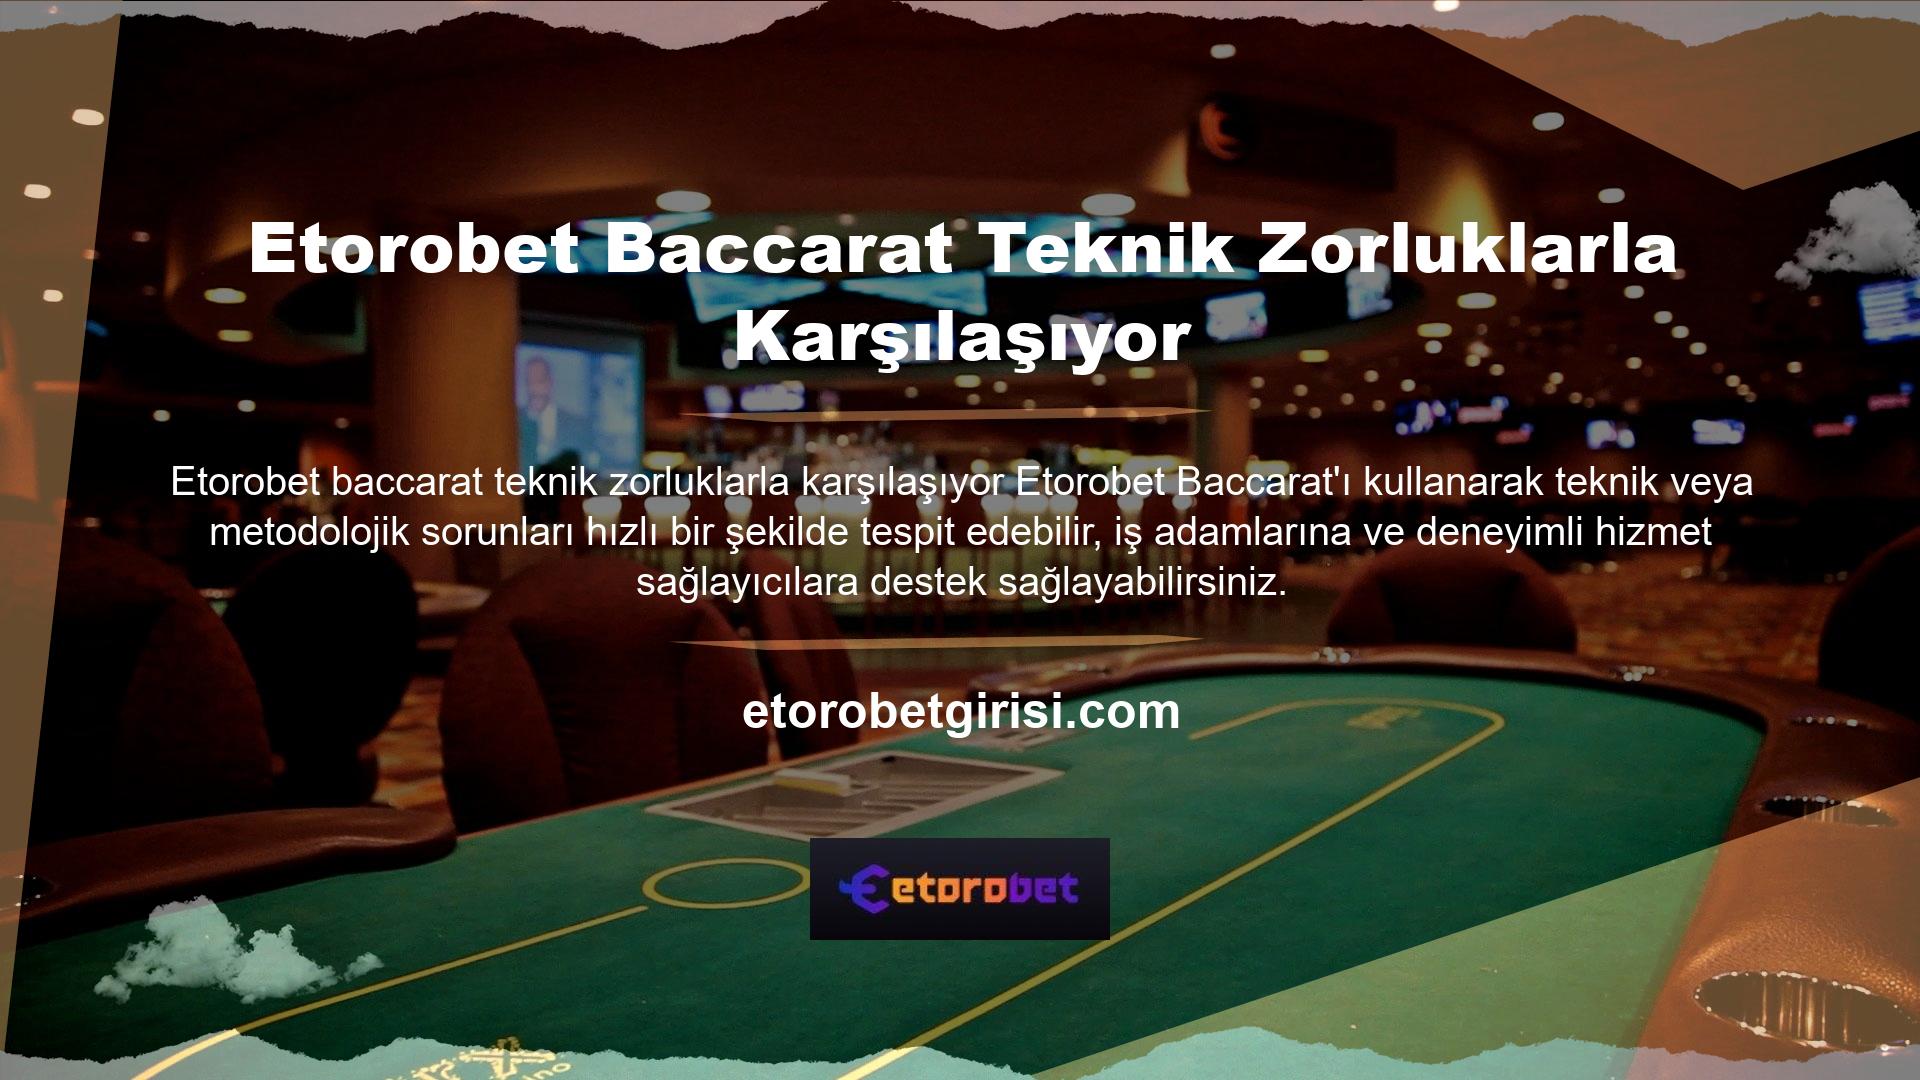 Etorobet casino bakara oynamanın basit ve kazançlı bir yolunu sunuyor